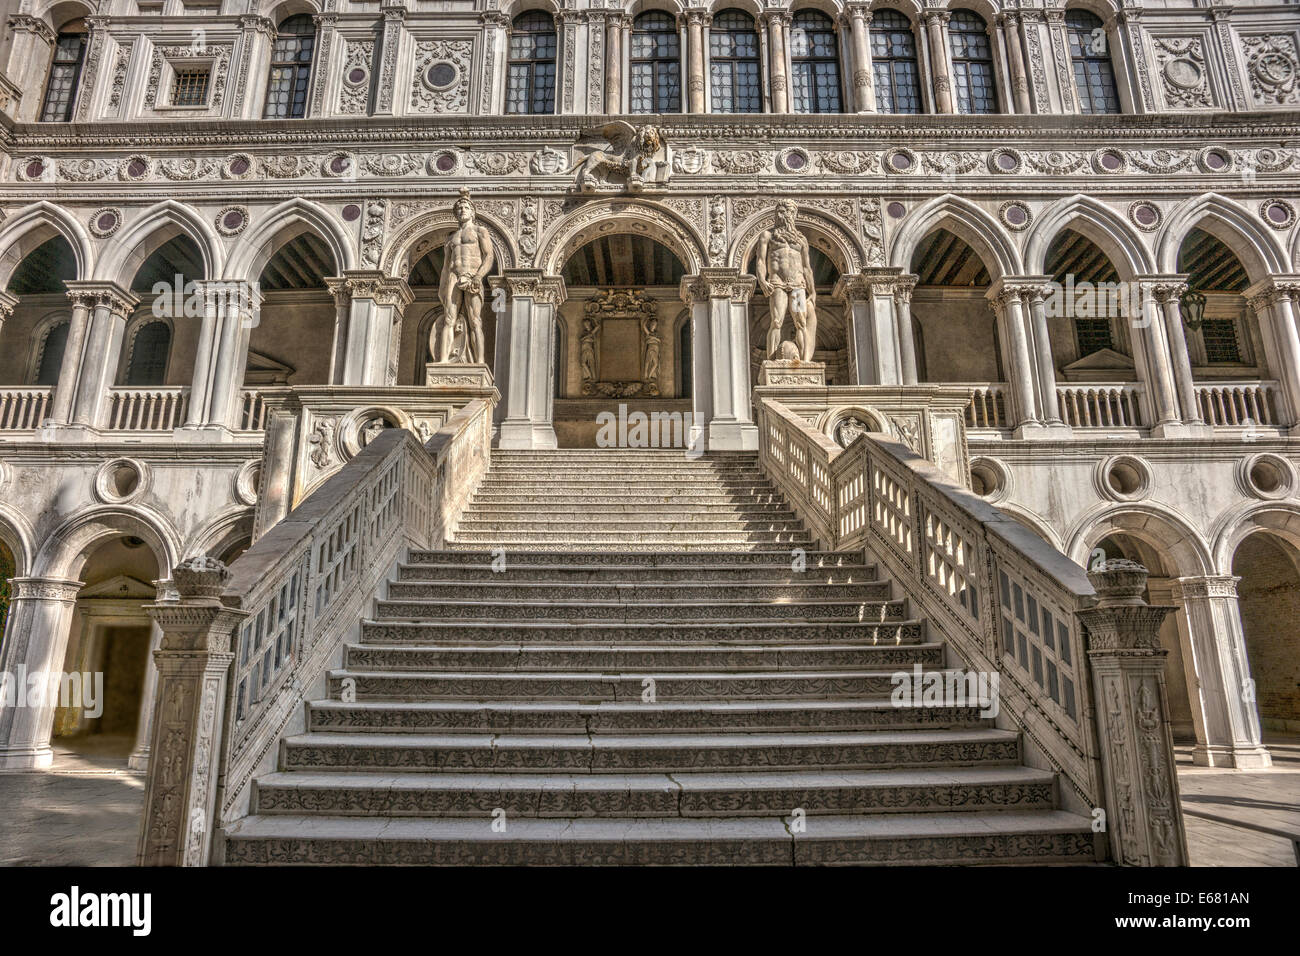 Image HDR réalistes de l'Escalier du géant dans la cour menant au deuxième étage du palais des Doges à Venise. Banque D'Images